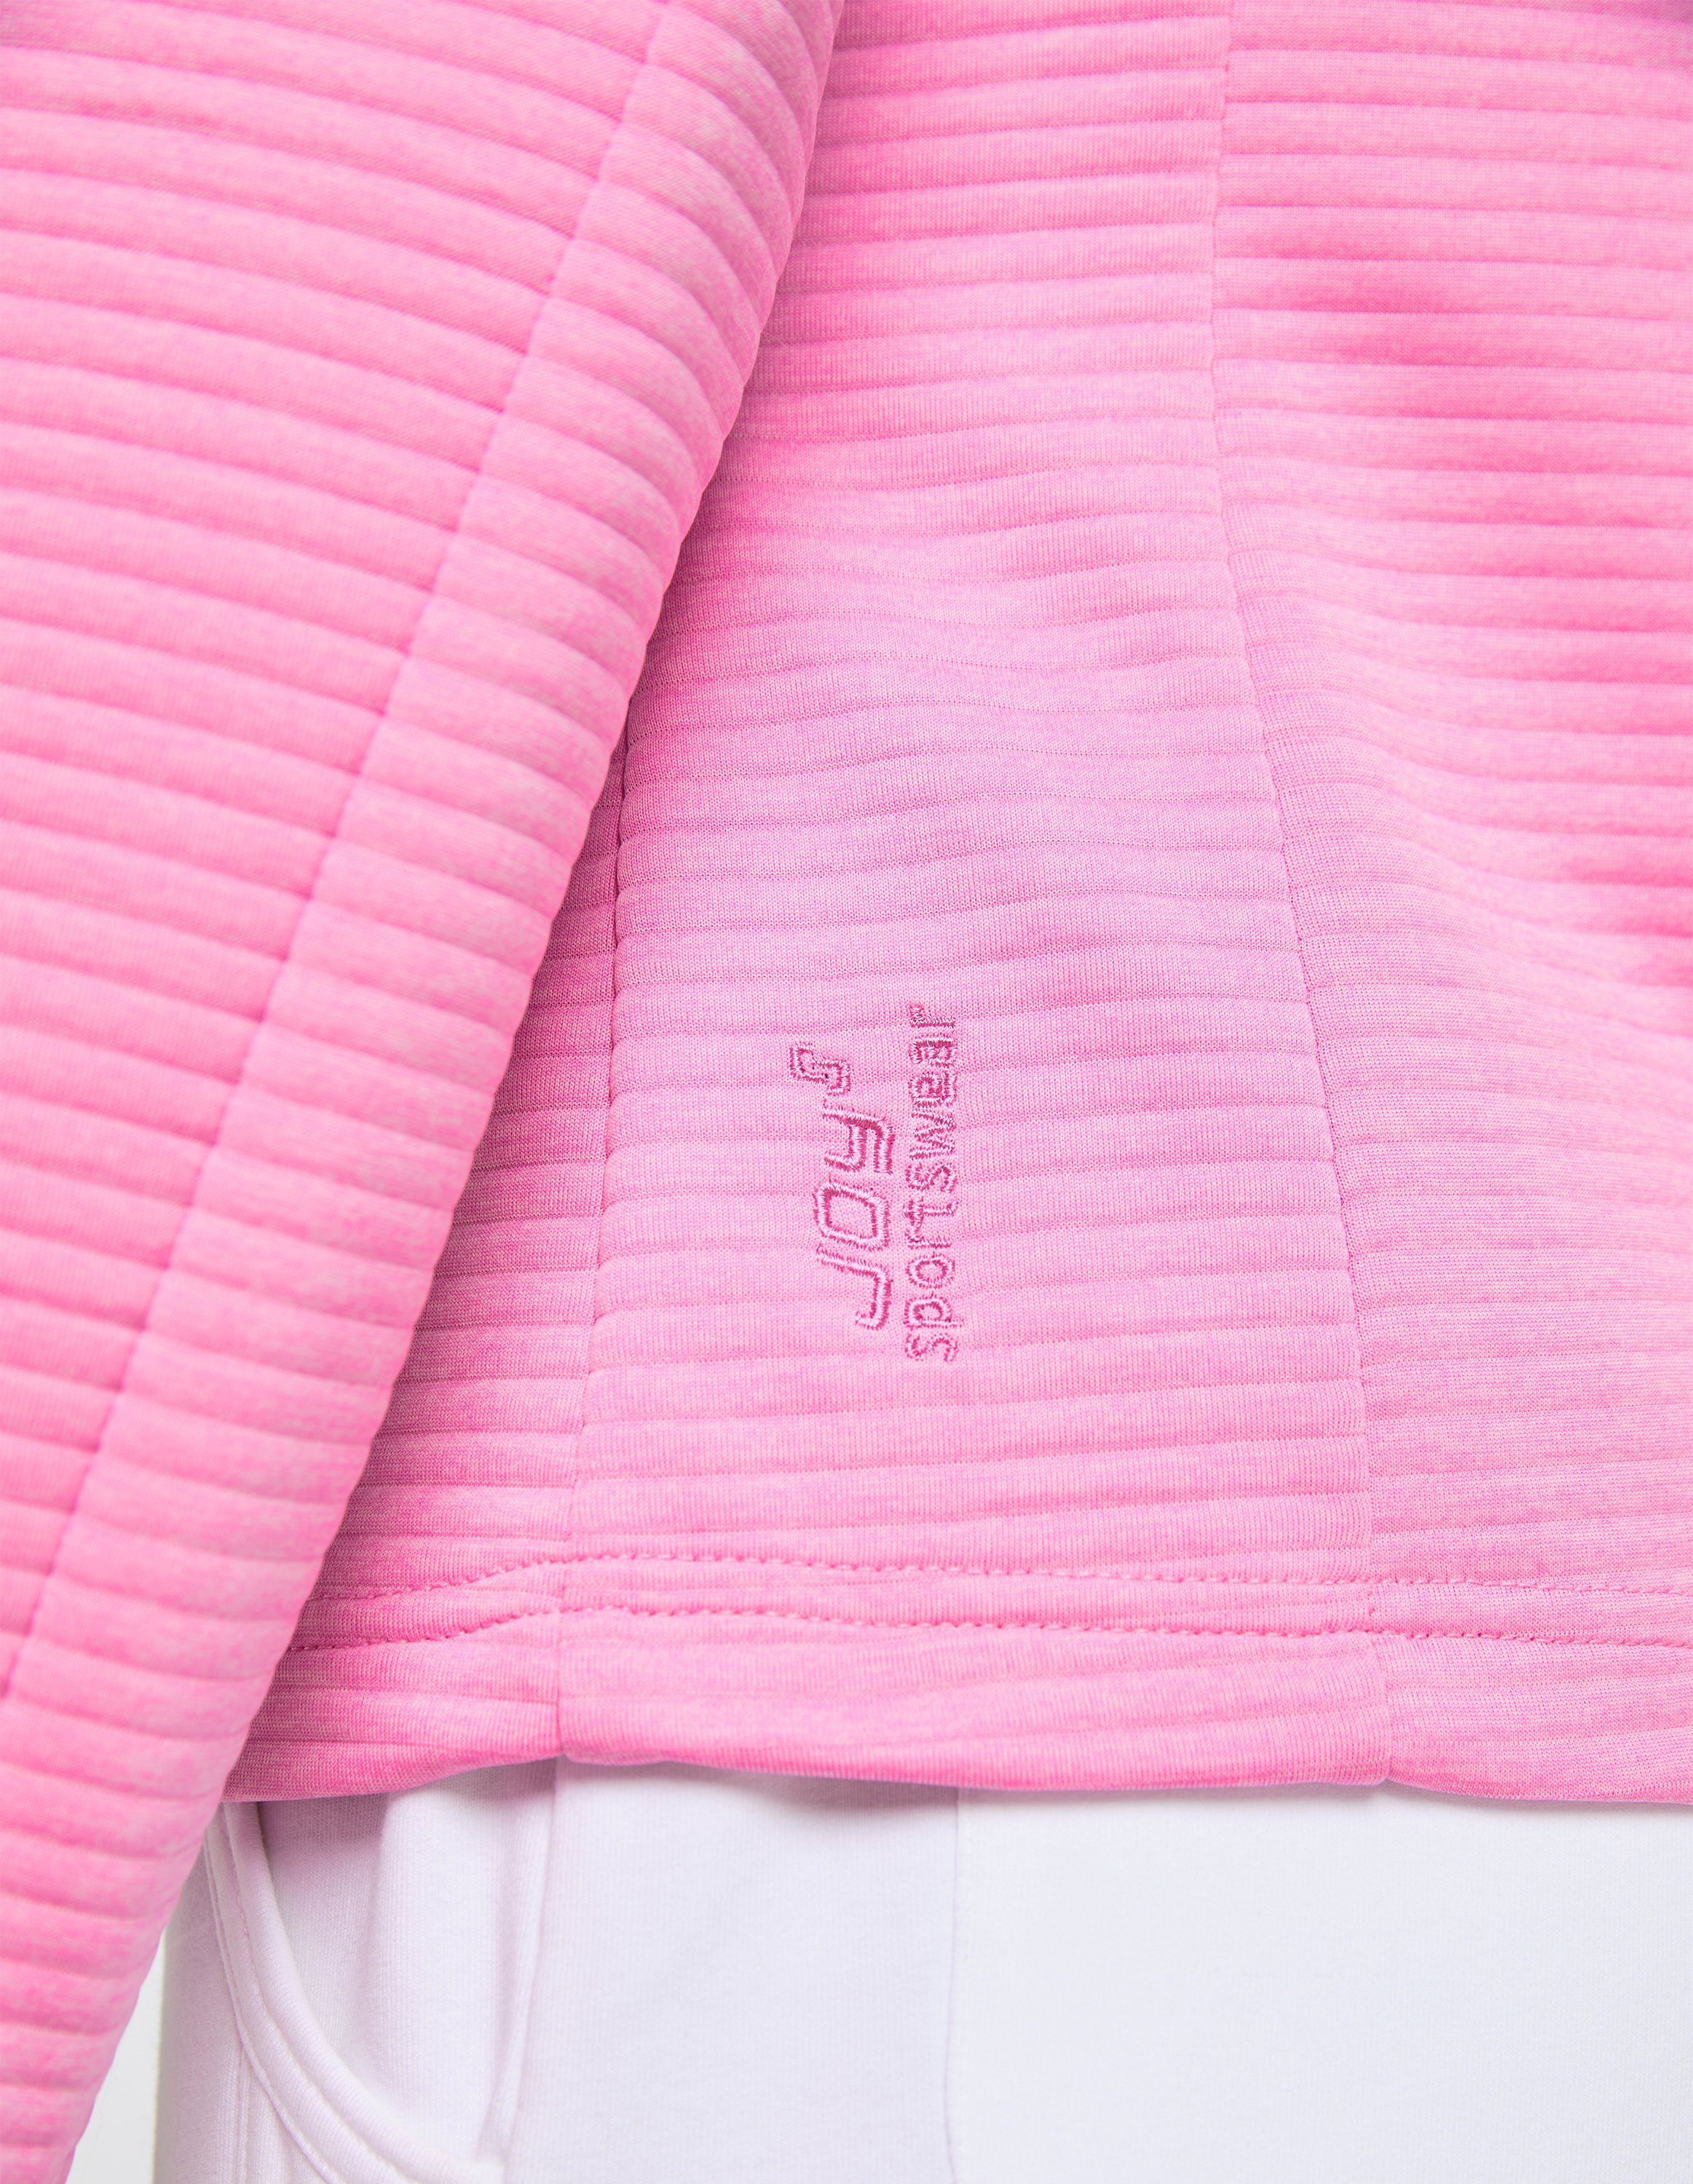 Jacke PEGGY Joy Trainingsjacke melange pink Sportswear cyclam